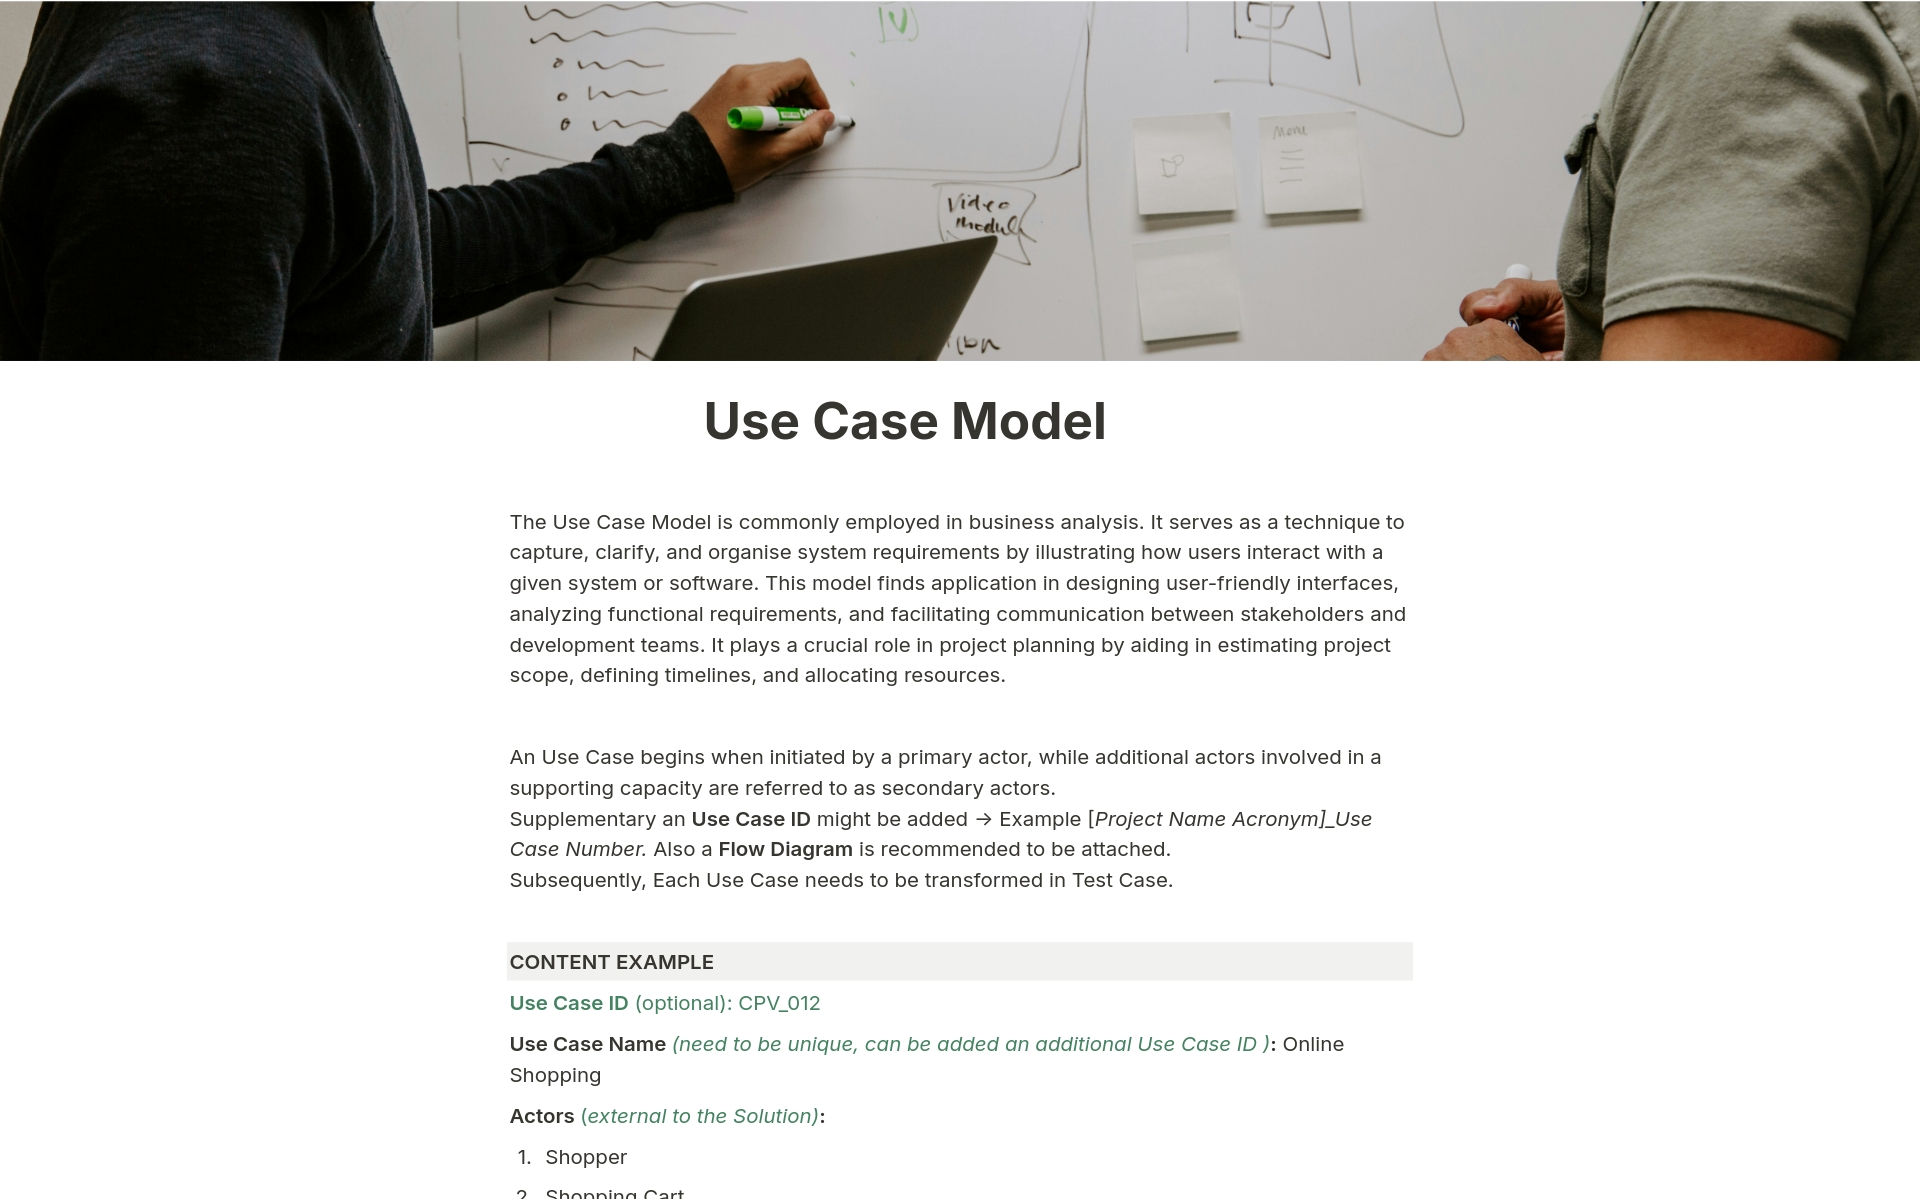 Captura de pantalla de la colección Best 10 Product Knowledge Base Templates for Product Analysts creada por Notion